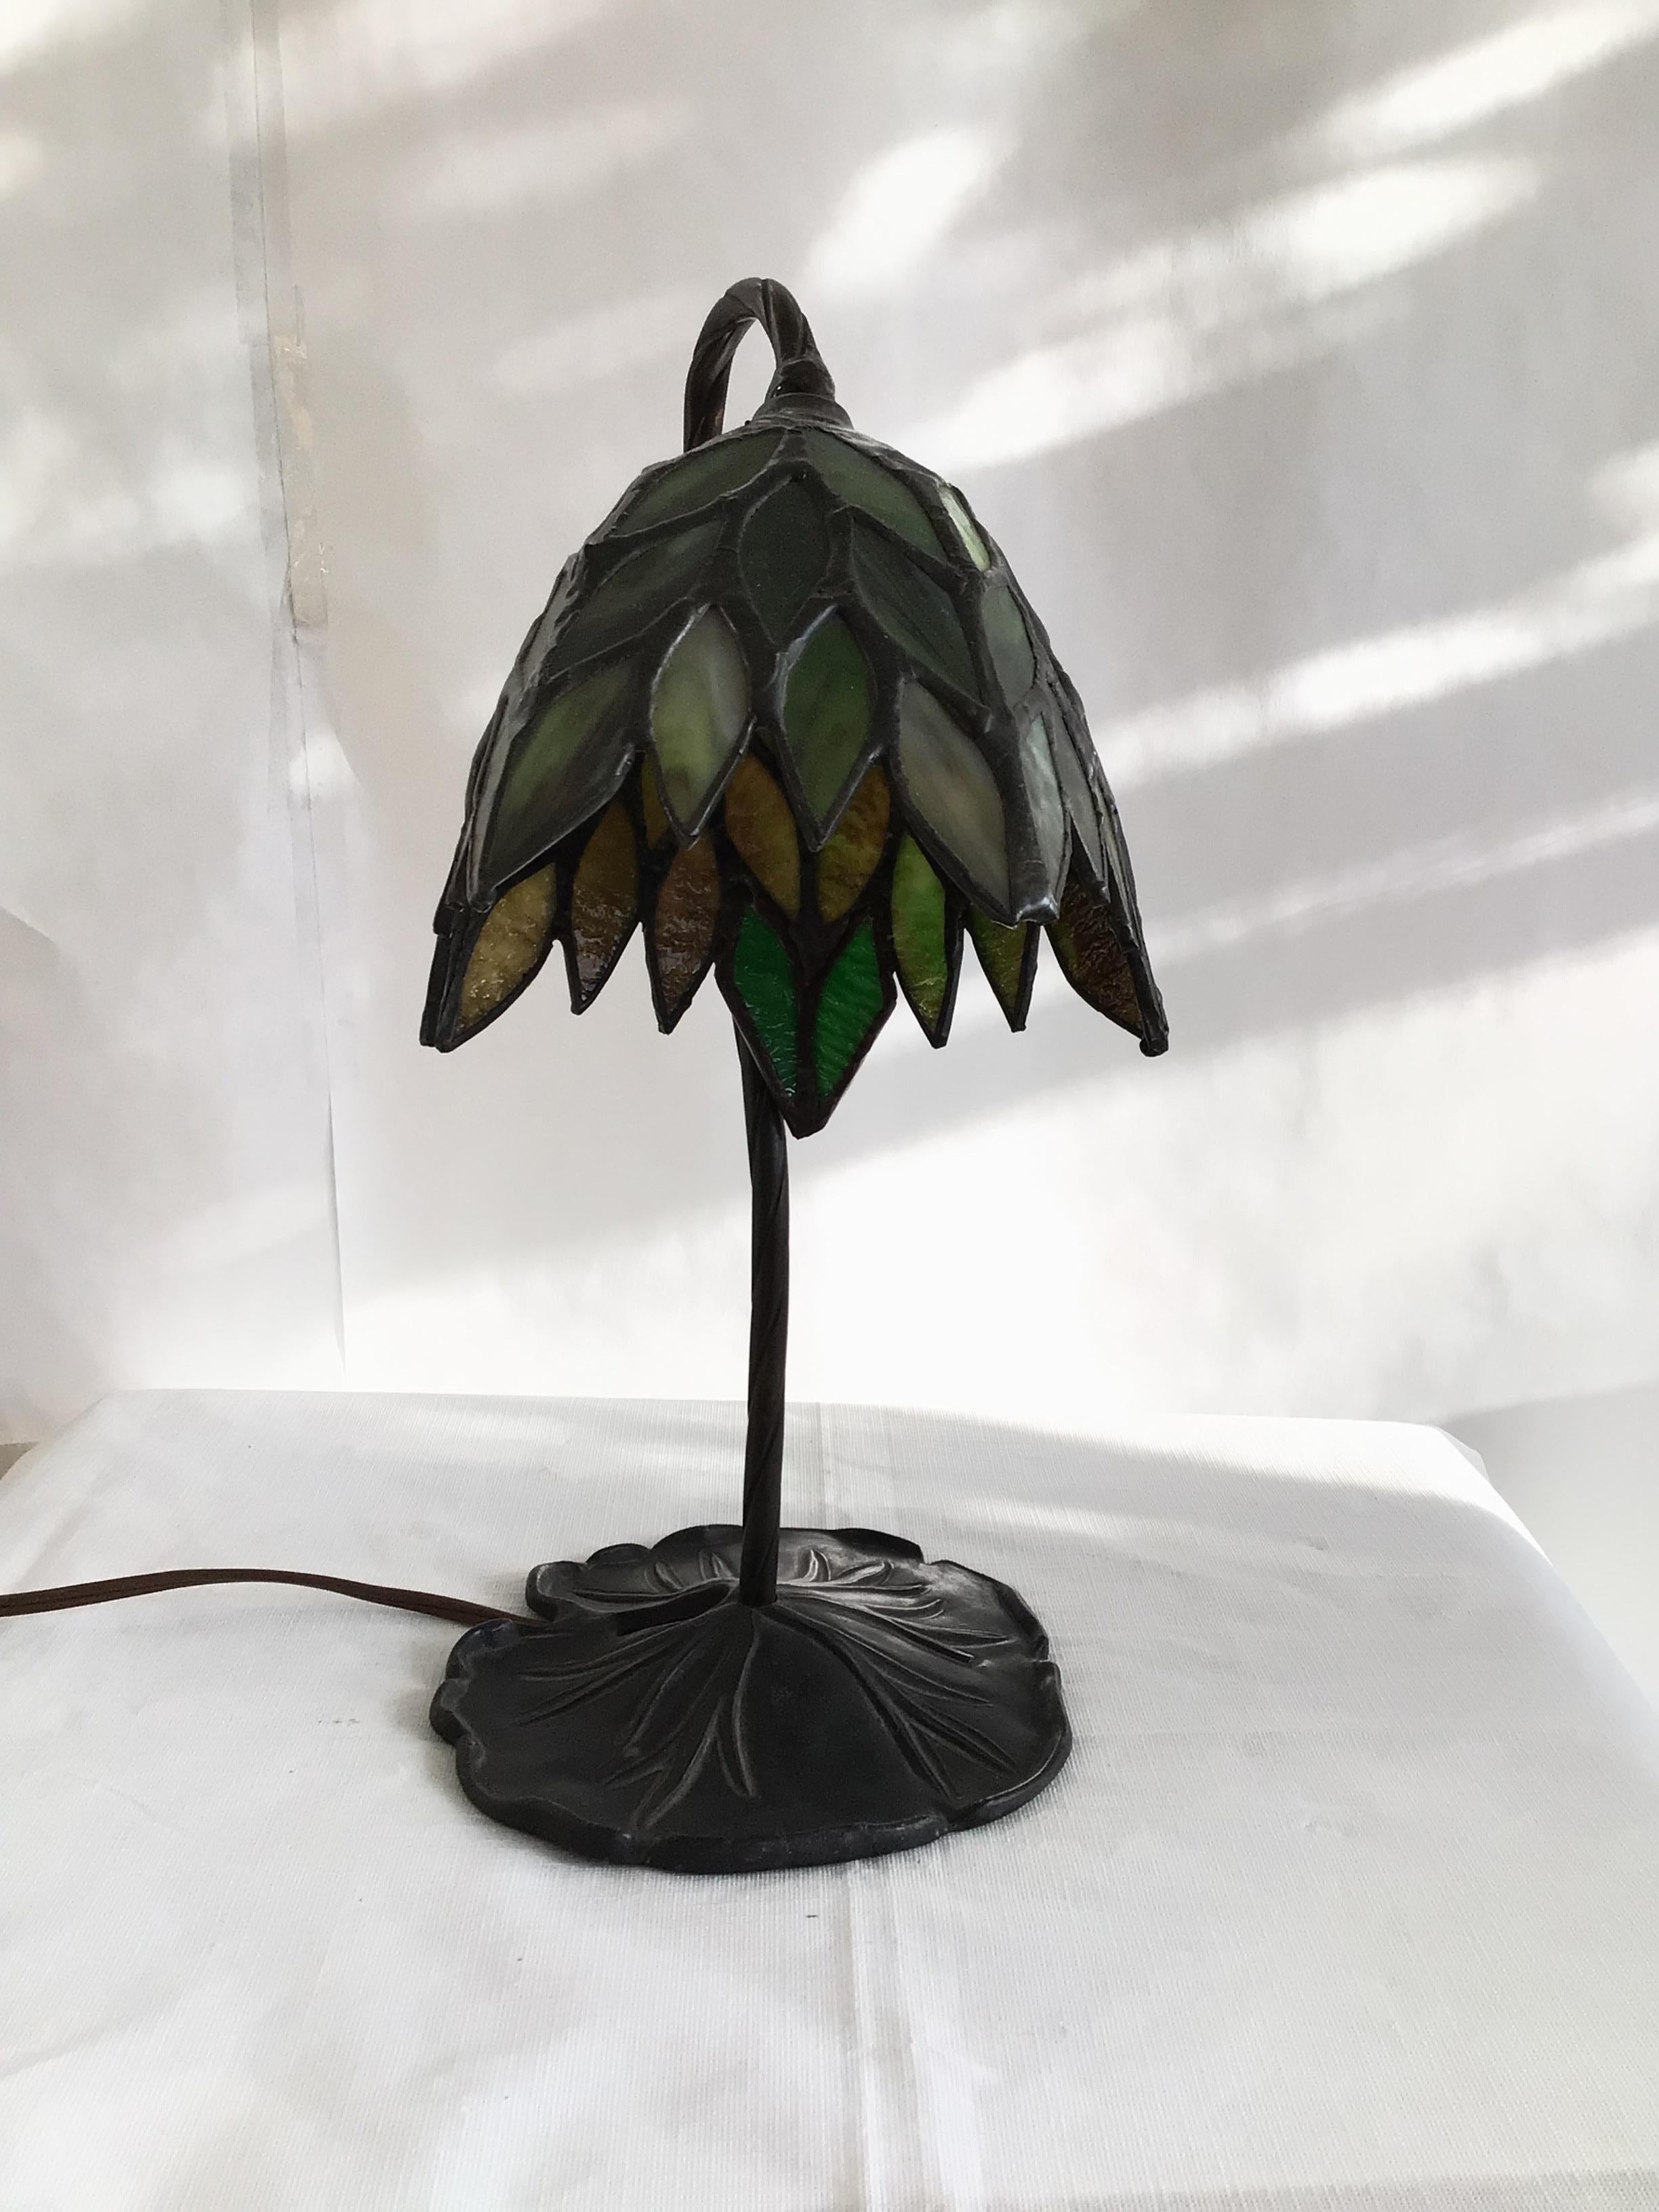 Lampe de bureau des années 1960 en verre teinté au plomb sur une base en métal en forme de nénuphar
Le câblage doit être refait
Couleurs : Vert, Noir Bronze 